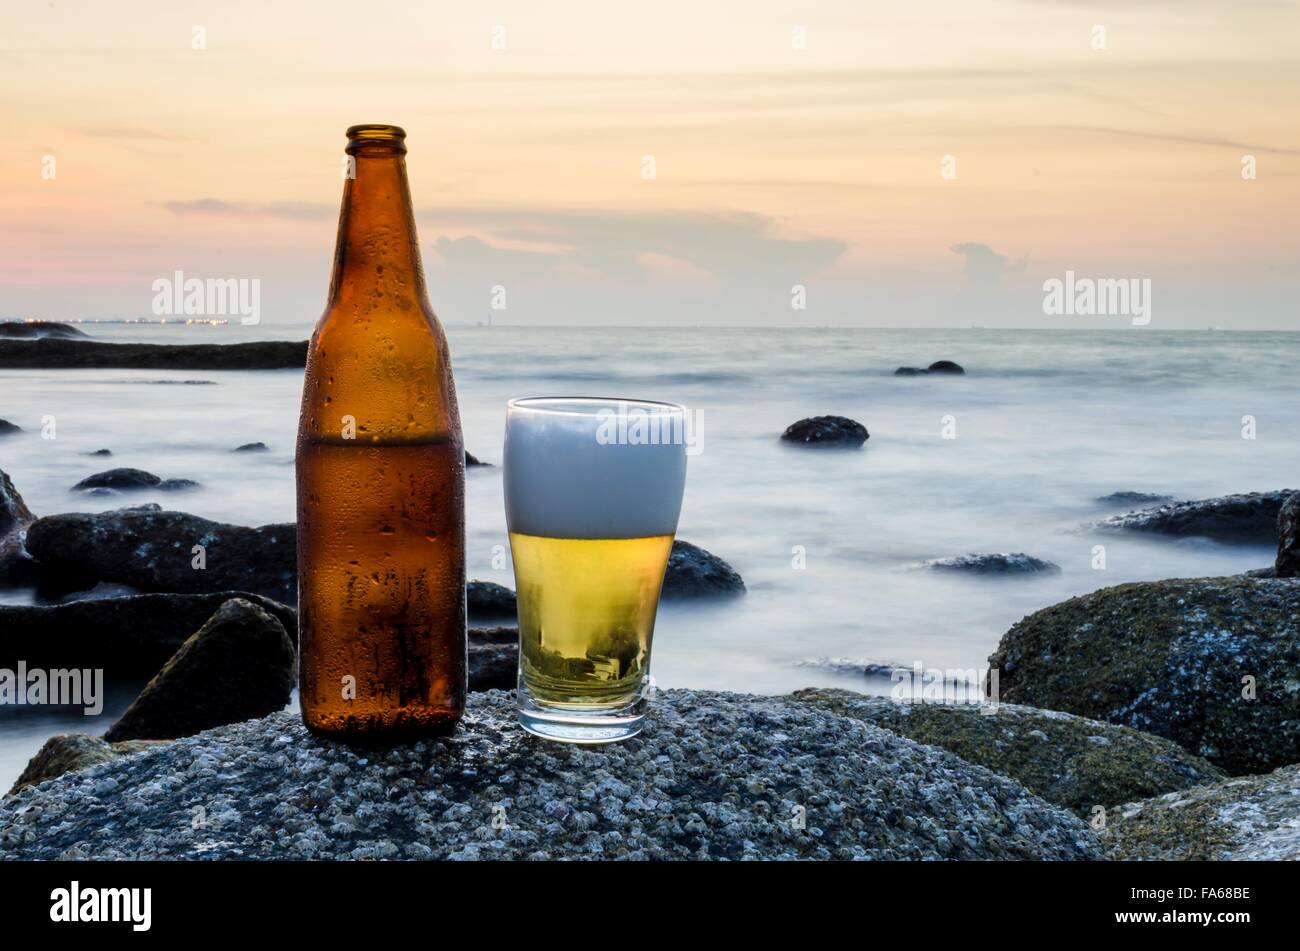 Verre de bière et une bouteille de bière sur un rocher sur la plage Banque D'Images